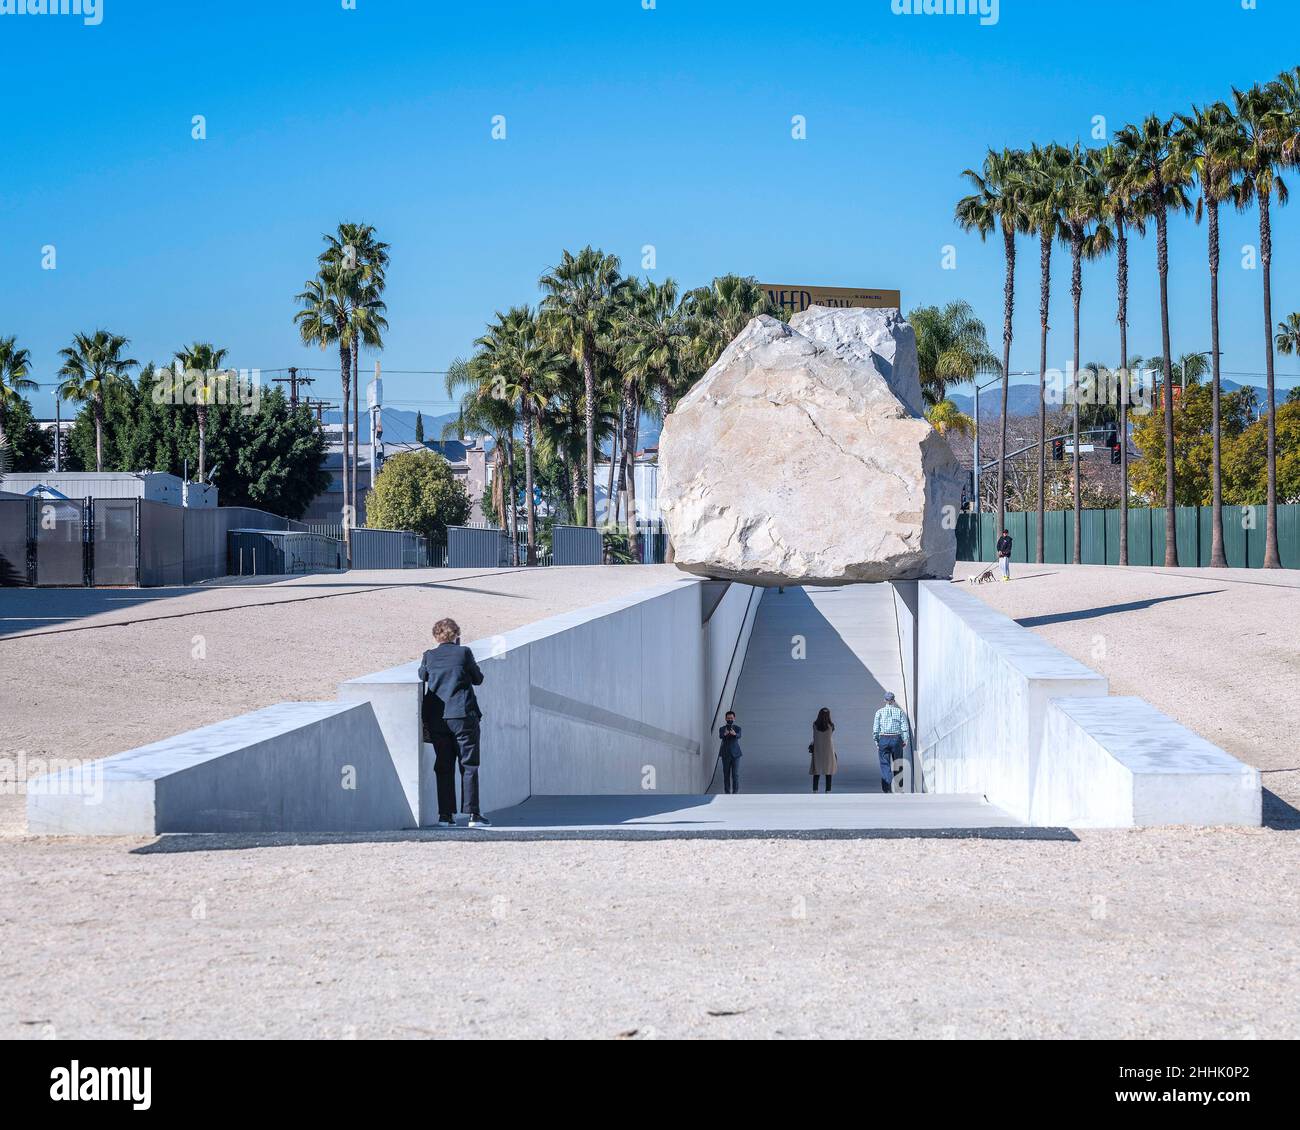 Los Angeles, CA, USA - 26 gennaio 2022: La scultura d'arte pubblica "Messa levitata" dell'artista Michael Heizer è esposta al LACMA di Los Angeles, CA. Foto Stock